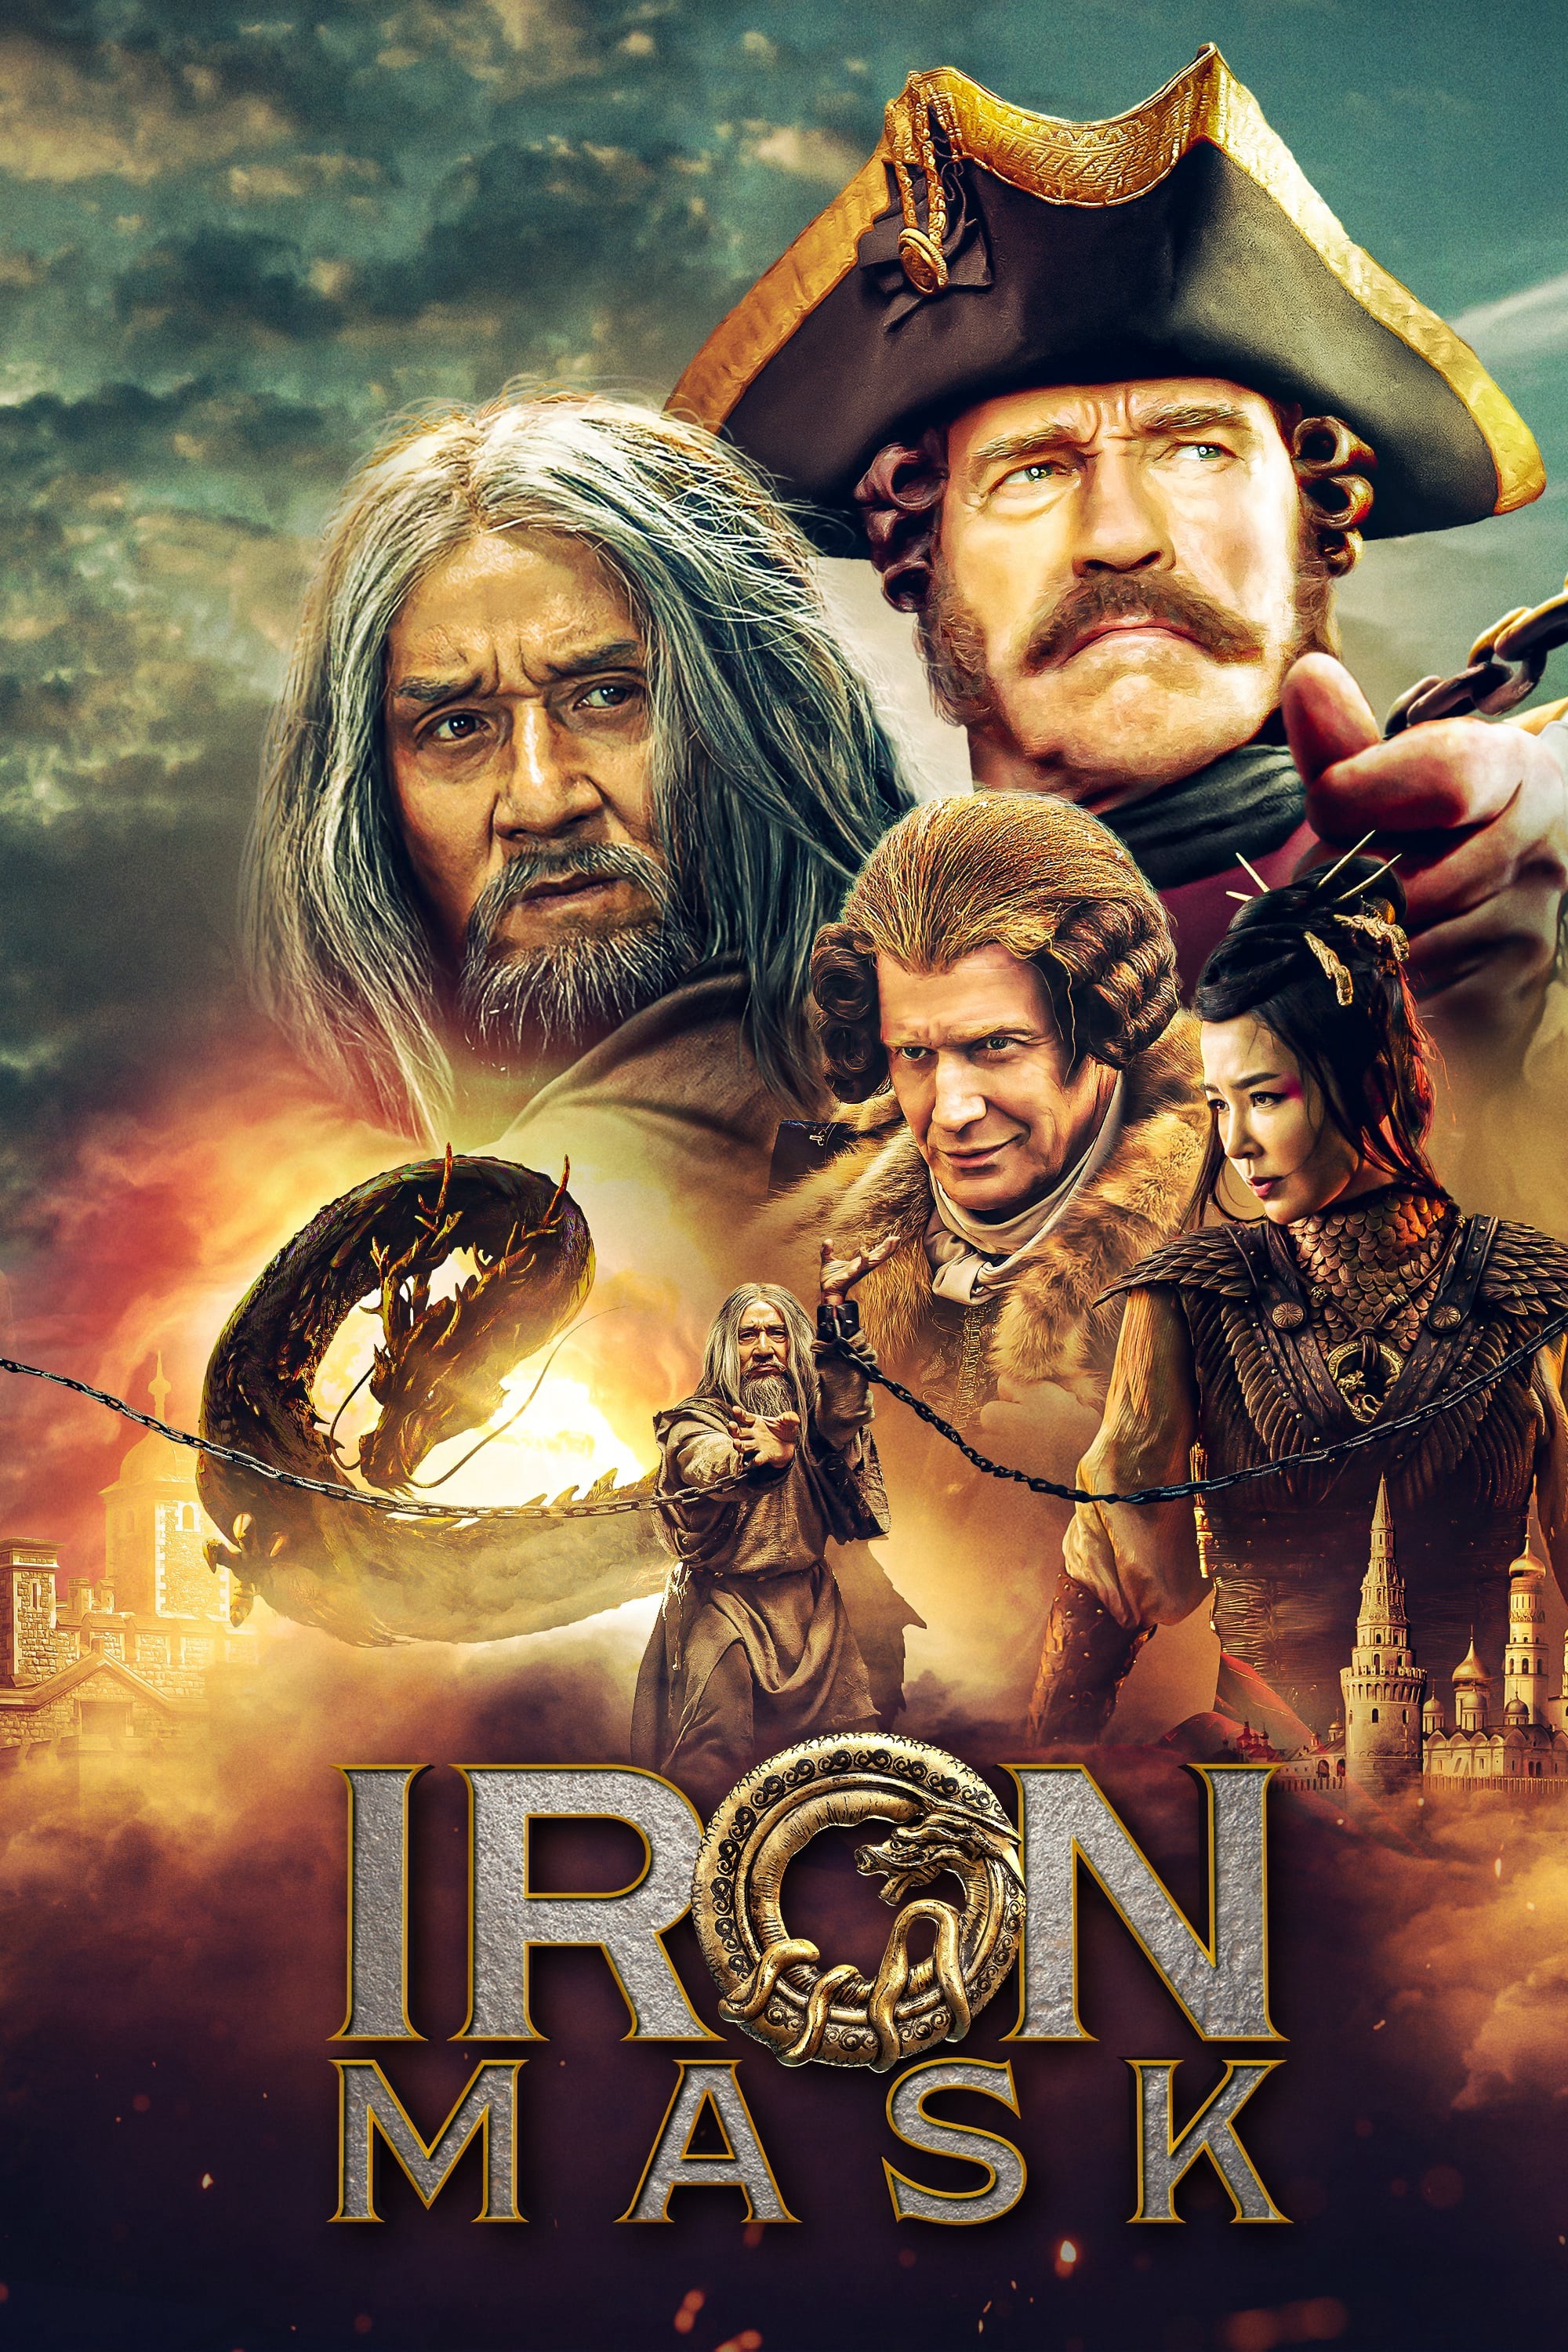 Iron Mask - Iron Mask (2019)